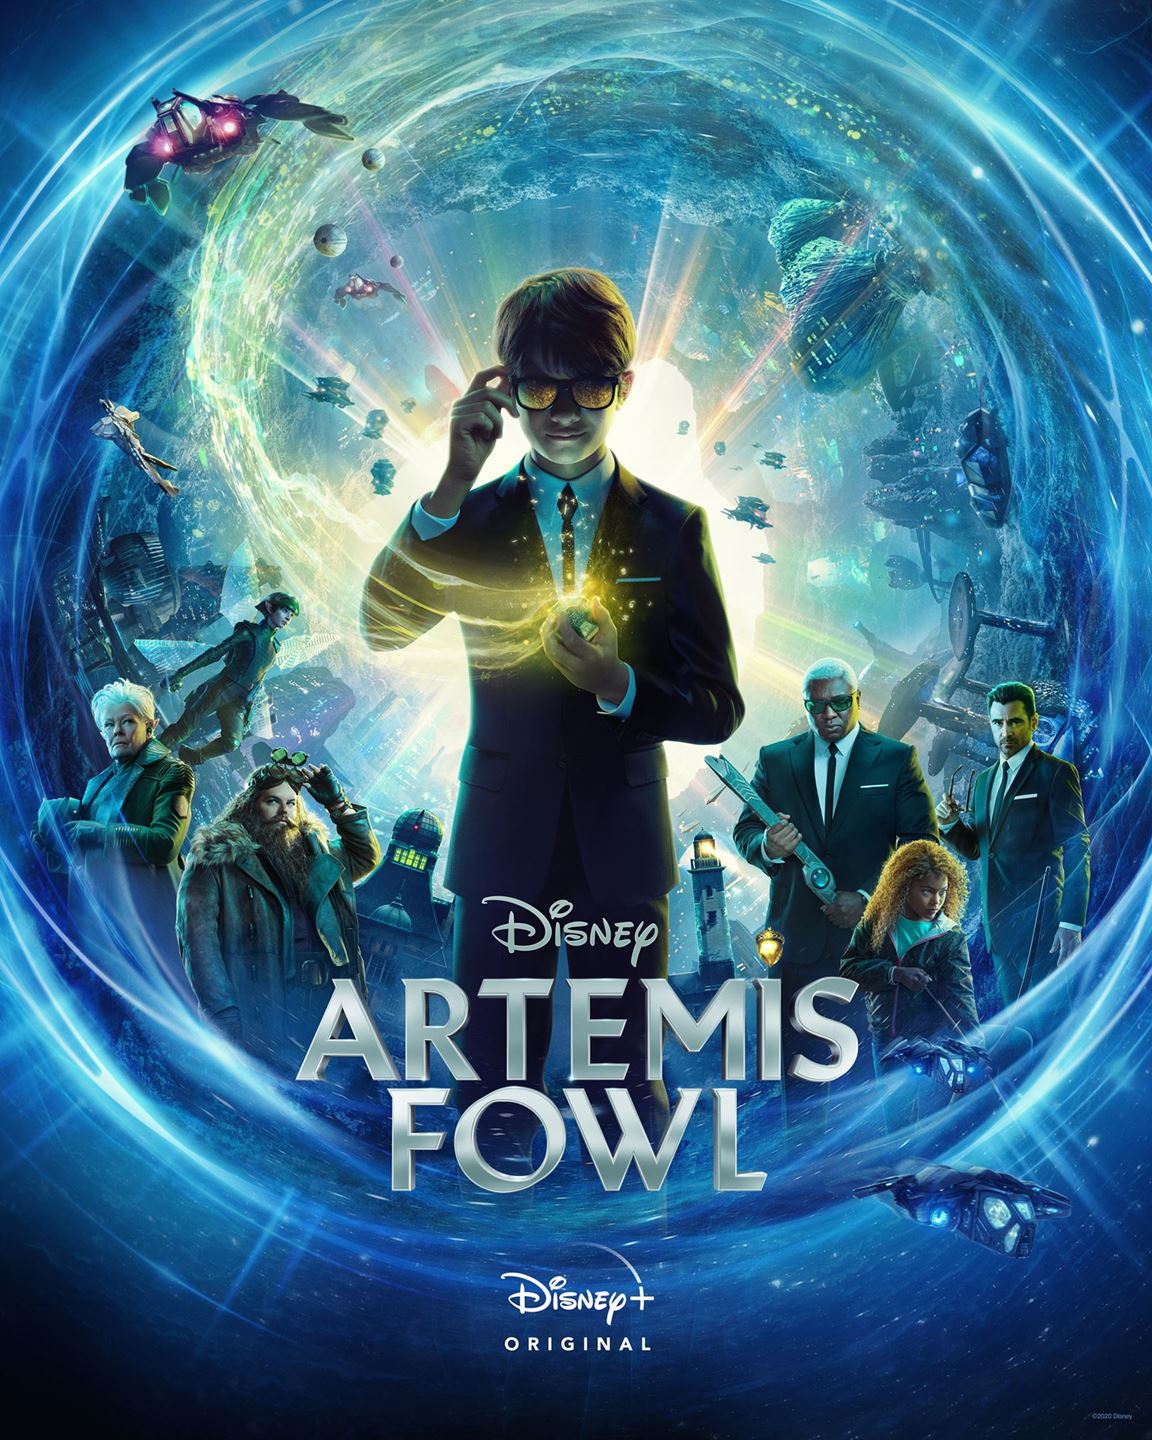 OSN تستعد لبث العرض الحصري الأول لفيلم المغامرات Artemis Fowl من ديزني